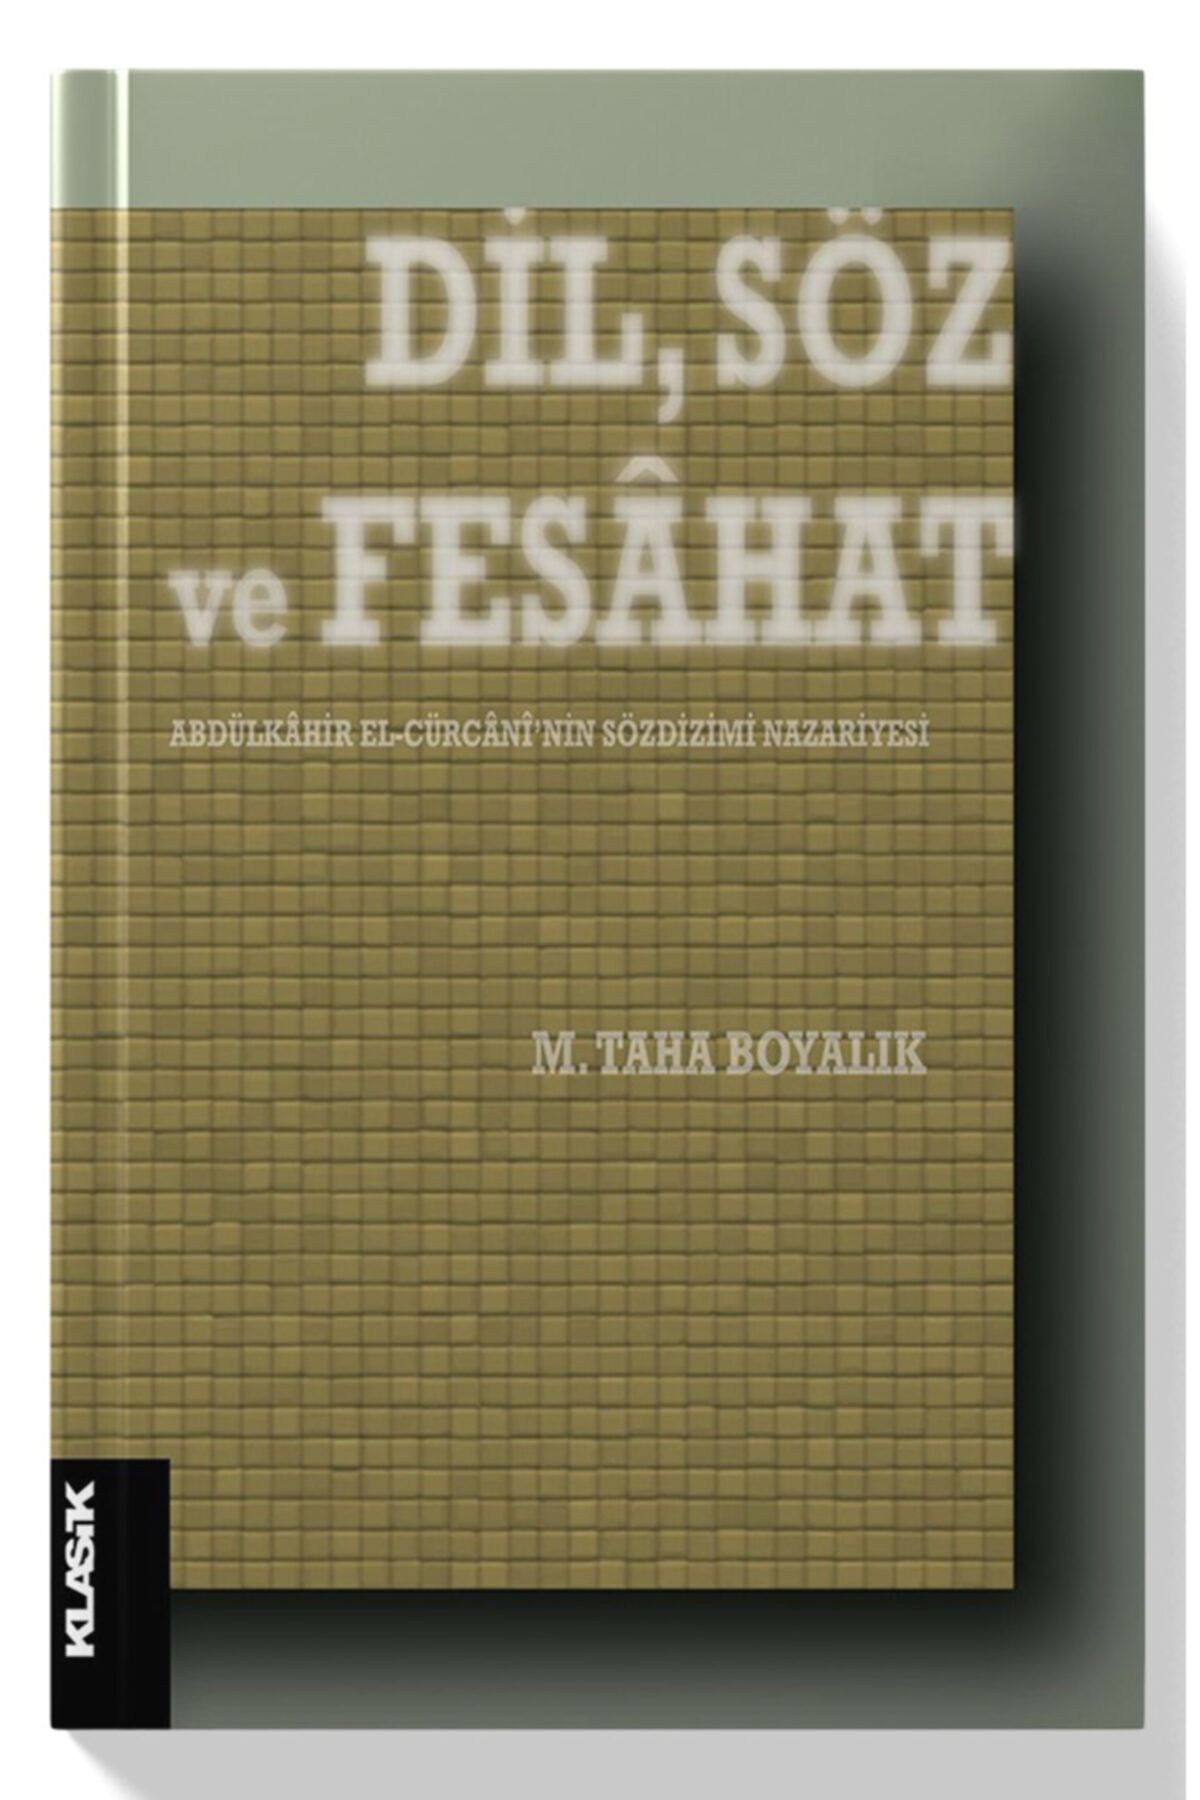 Klasik Yayınları Dil Söz Ve Fesahat Abdülkahir Elcürcani’nin Sözdizimi Nazariyesi - M. Taha Boyalık